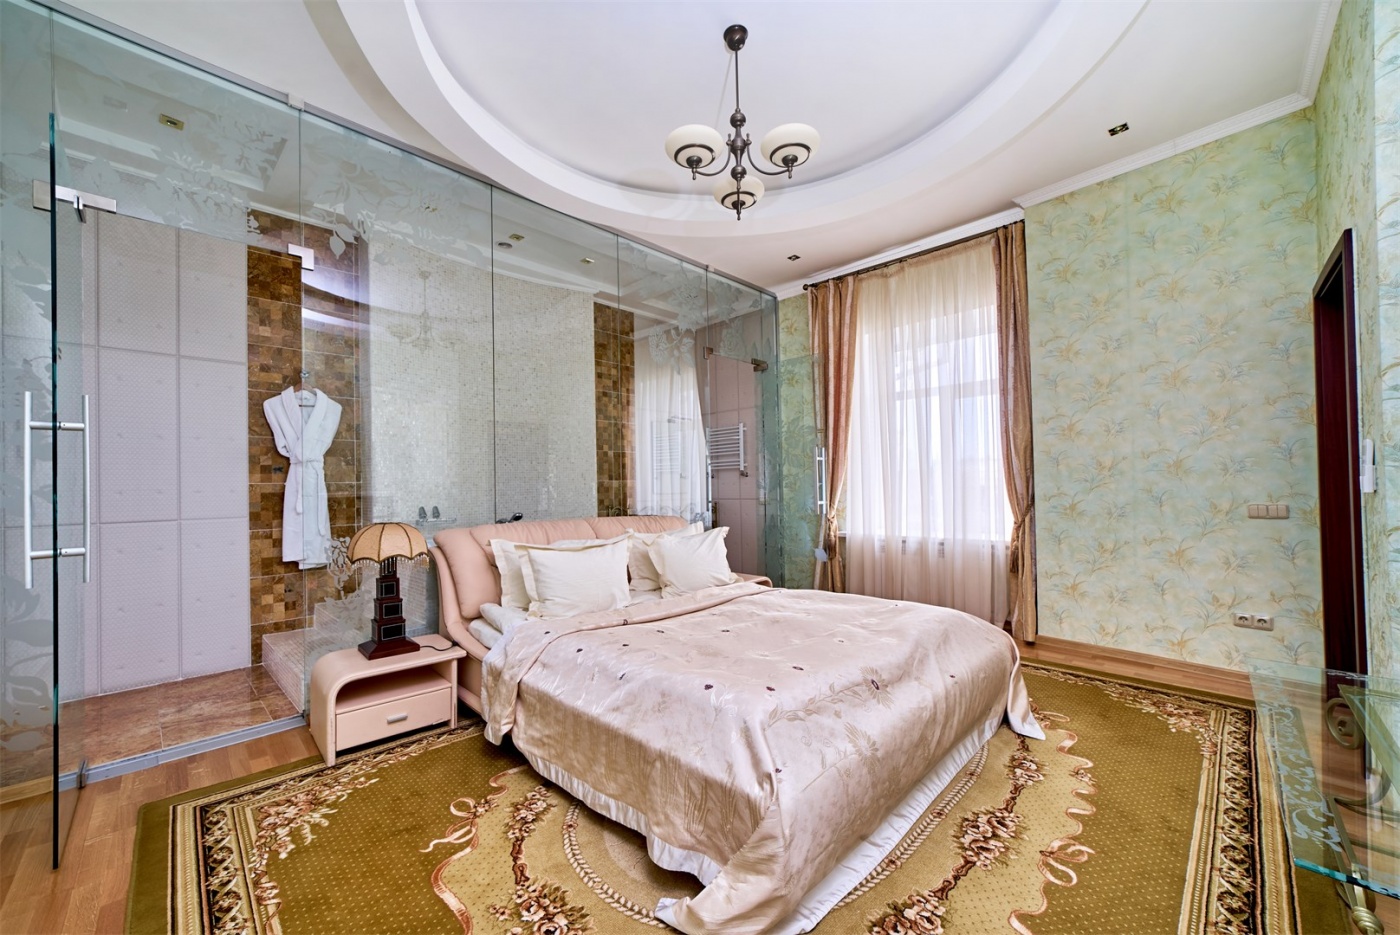  Отель «Севастополь» Республика Крым Посольские апартаменты, фото 2